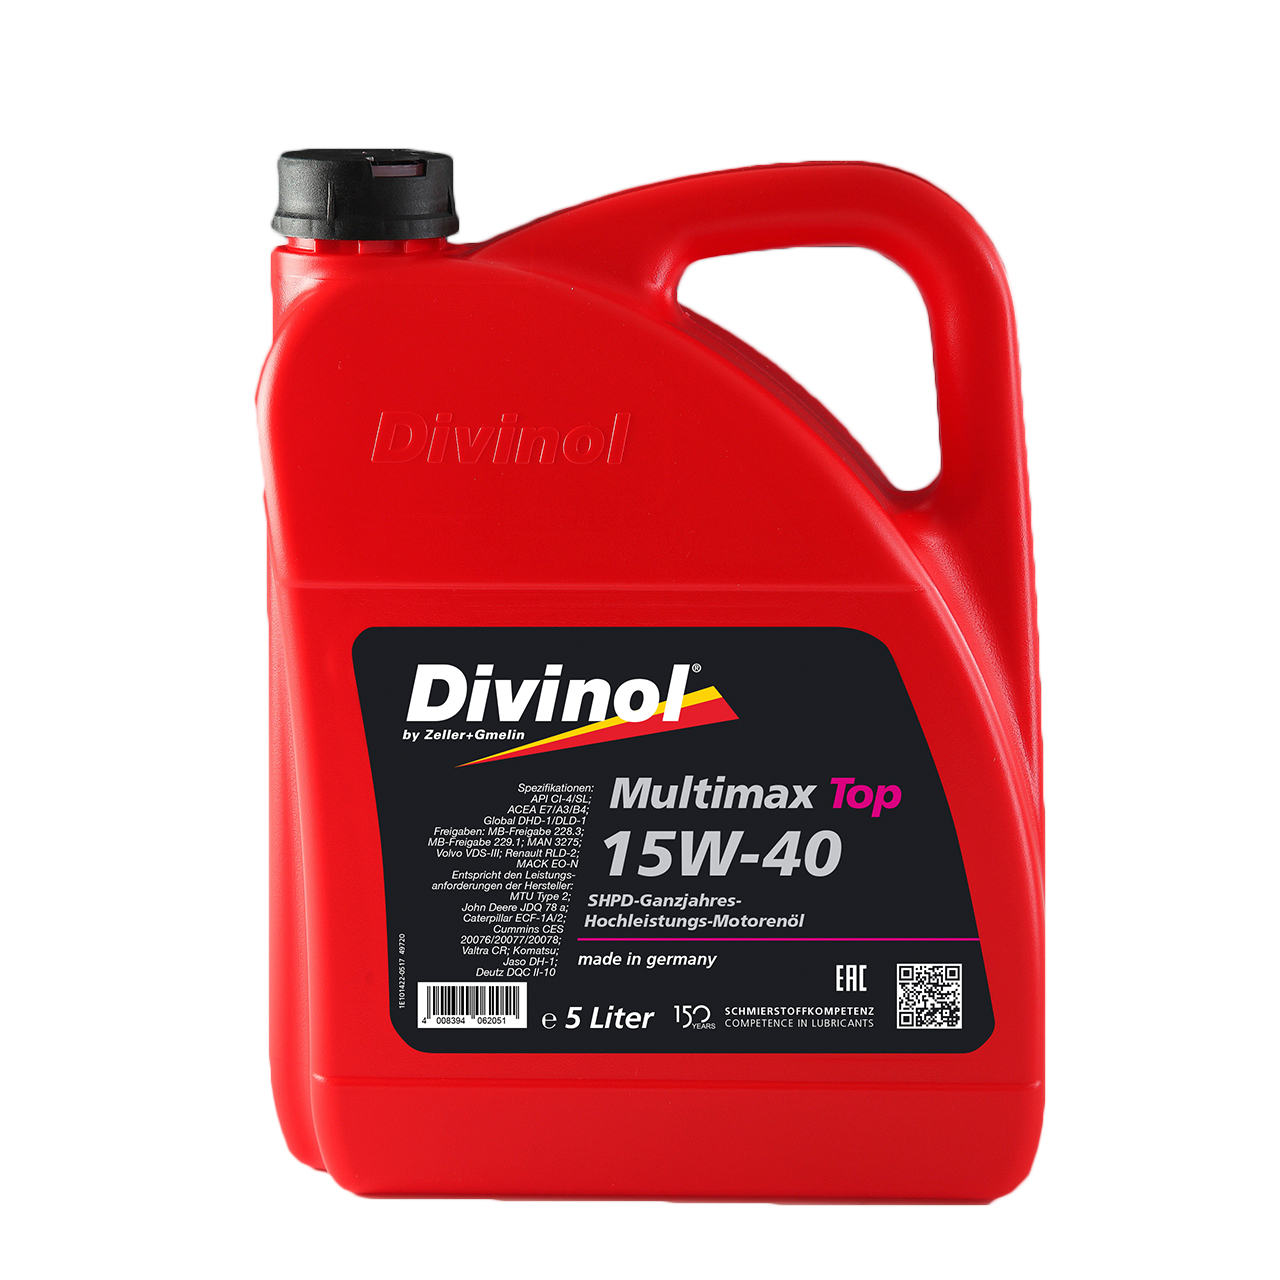 Divinol Hydrauliköl HLP 32 günstig kaufen